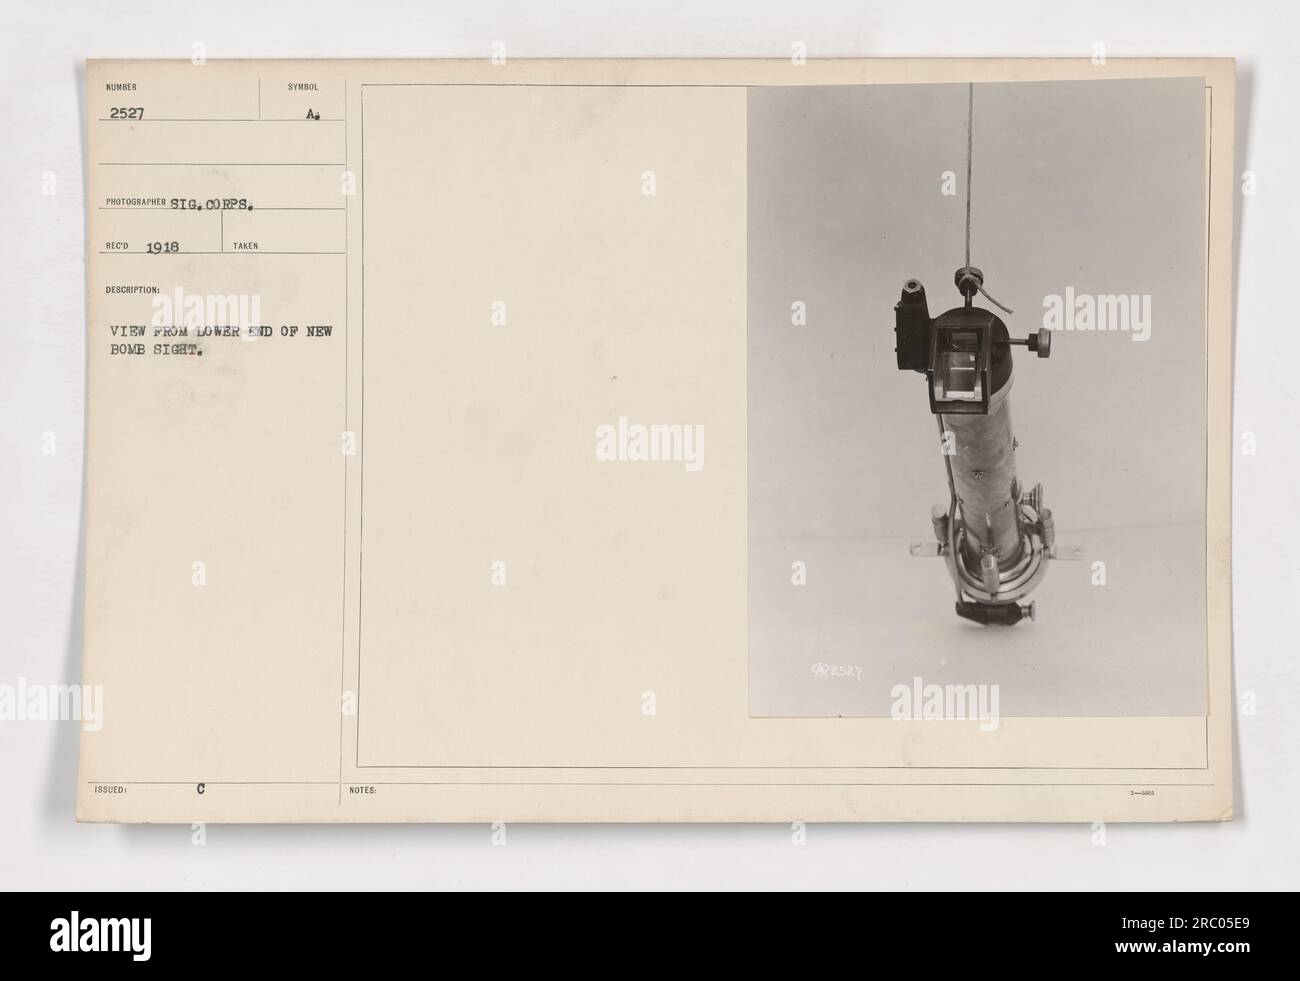 Ein Foto von einem Fotografen vom Signalkorps aus dem Jahr 1918. Das Bild zeigt eine Ansicht vom unteren Ende eines neuen Bombenzielgeräts, insbesondere Nummer 2527. Die Ausrüstung wird vom Militär im Ersten Weltkrieg verwendet, um die Genauigkeit beim Zielen und Abwerfen von Bomben zu verbessern. Stockfoto